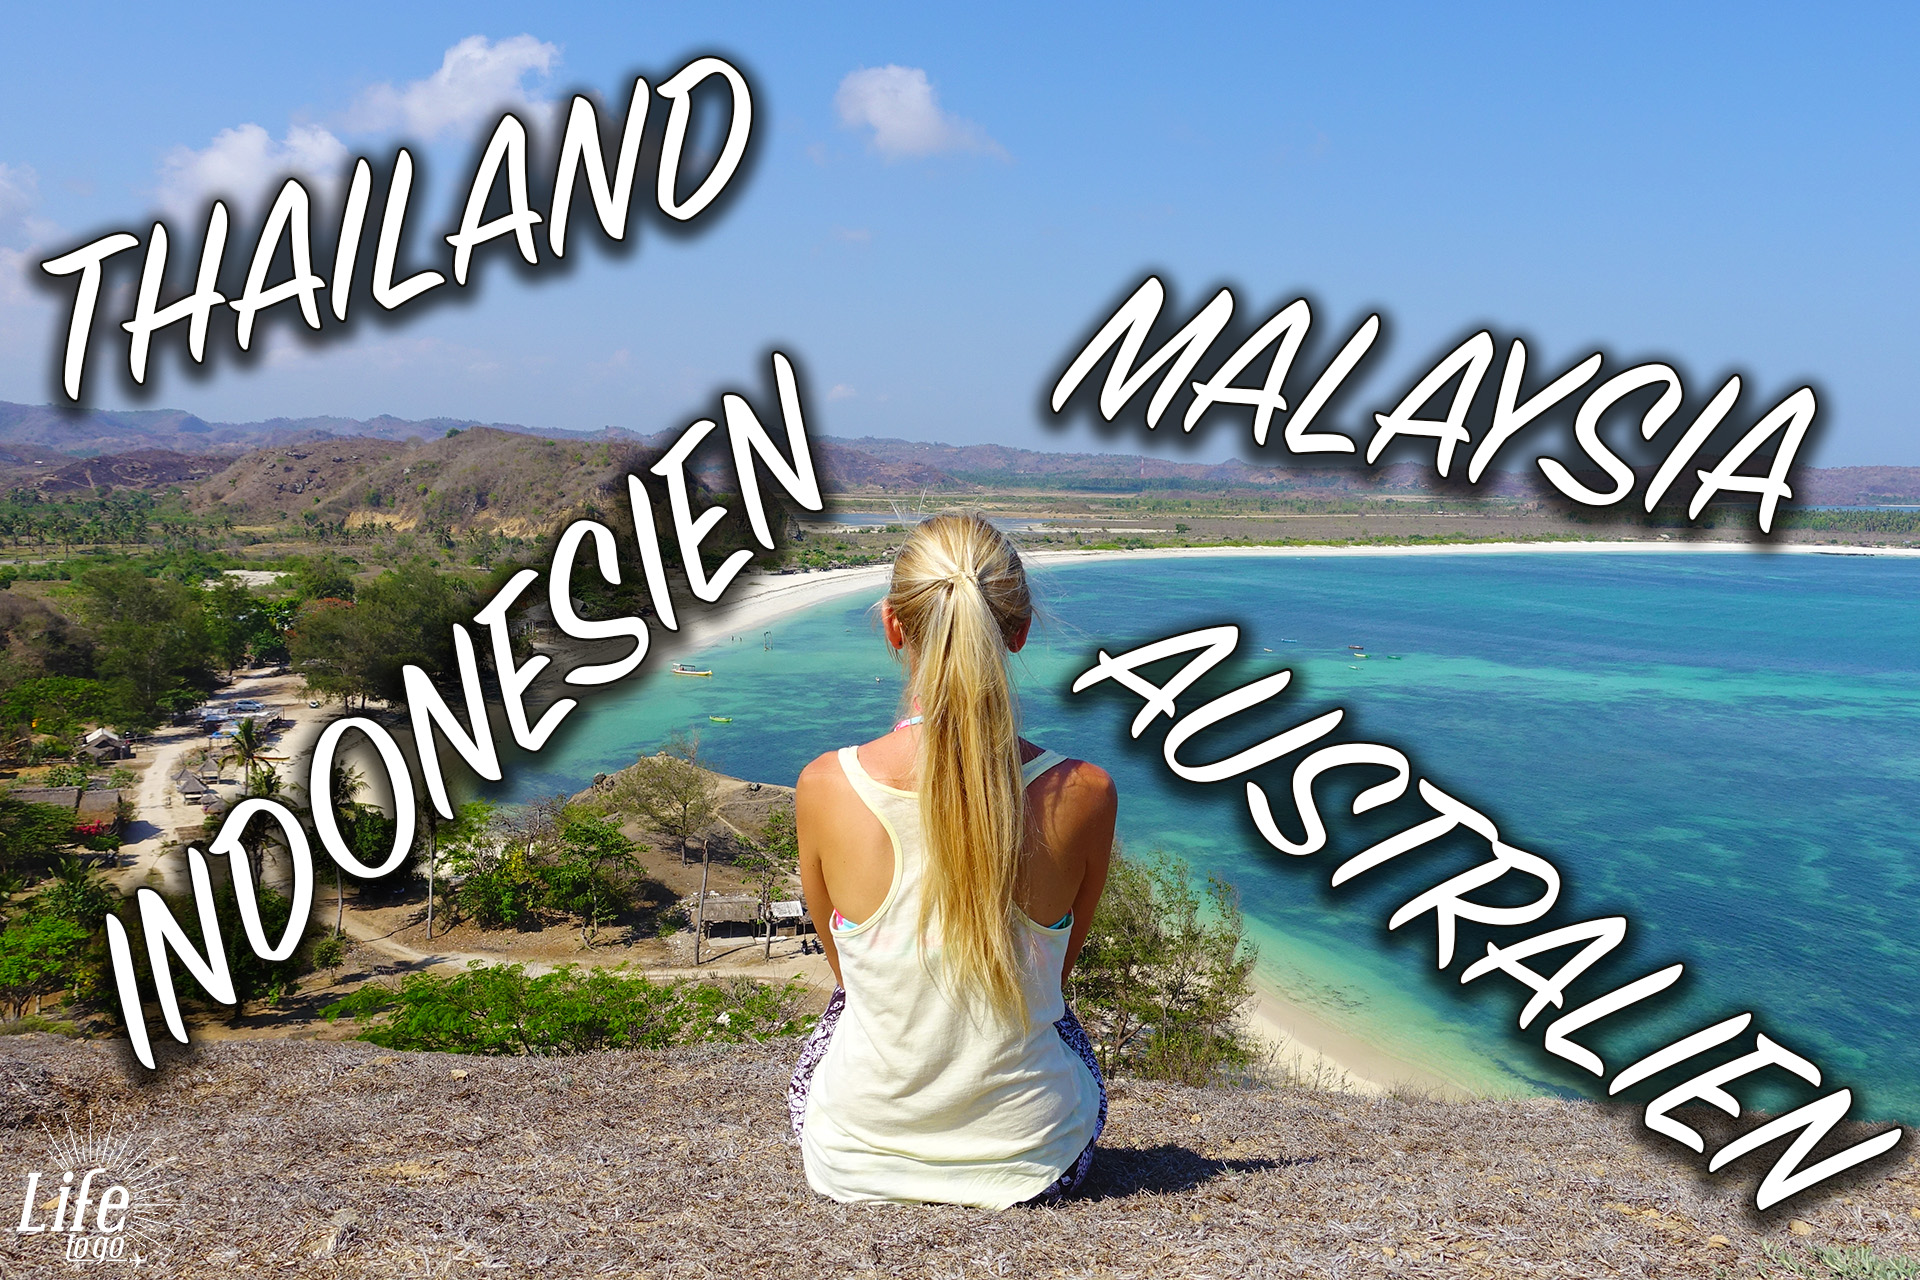 Life to go Weltreise - Reise von Thailand nach Australien, über Malaysia und Indonesien